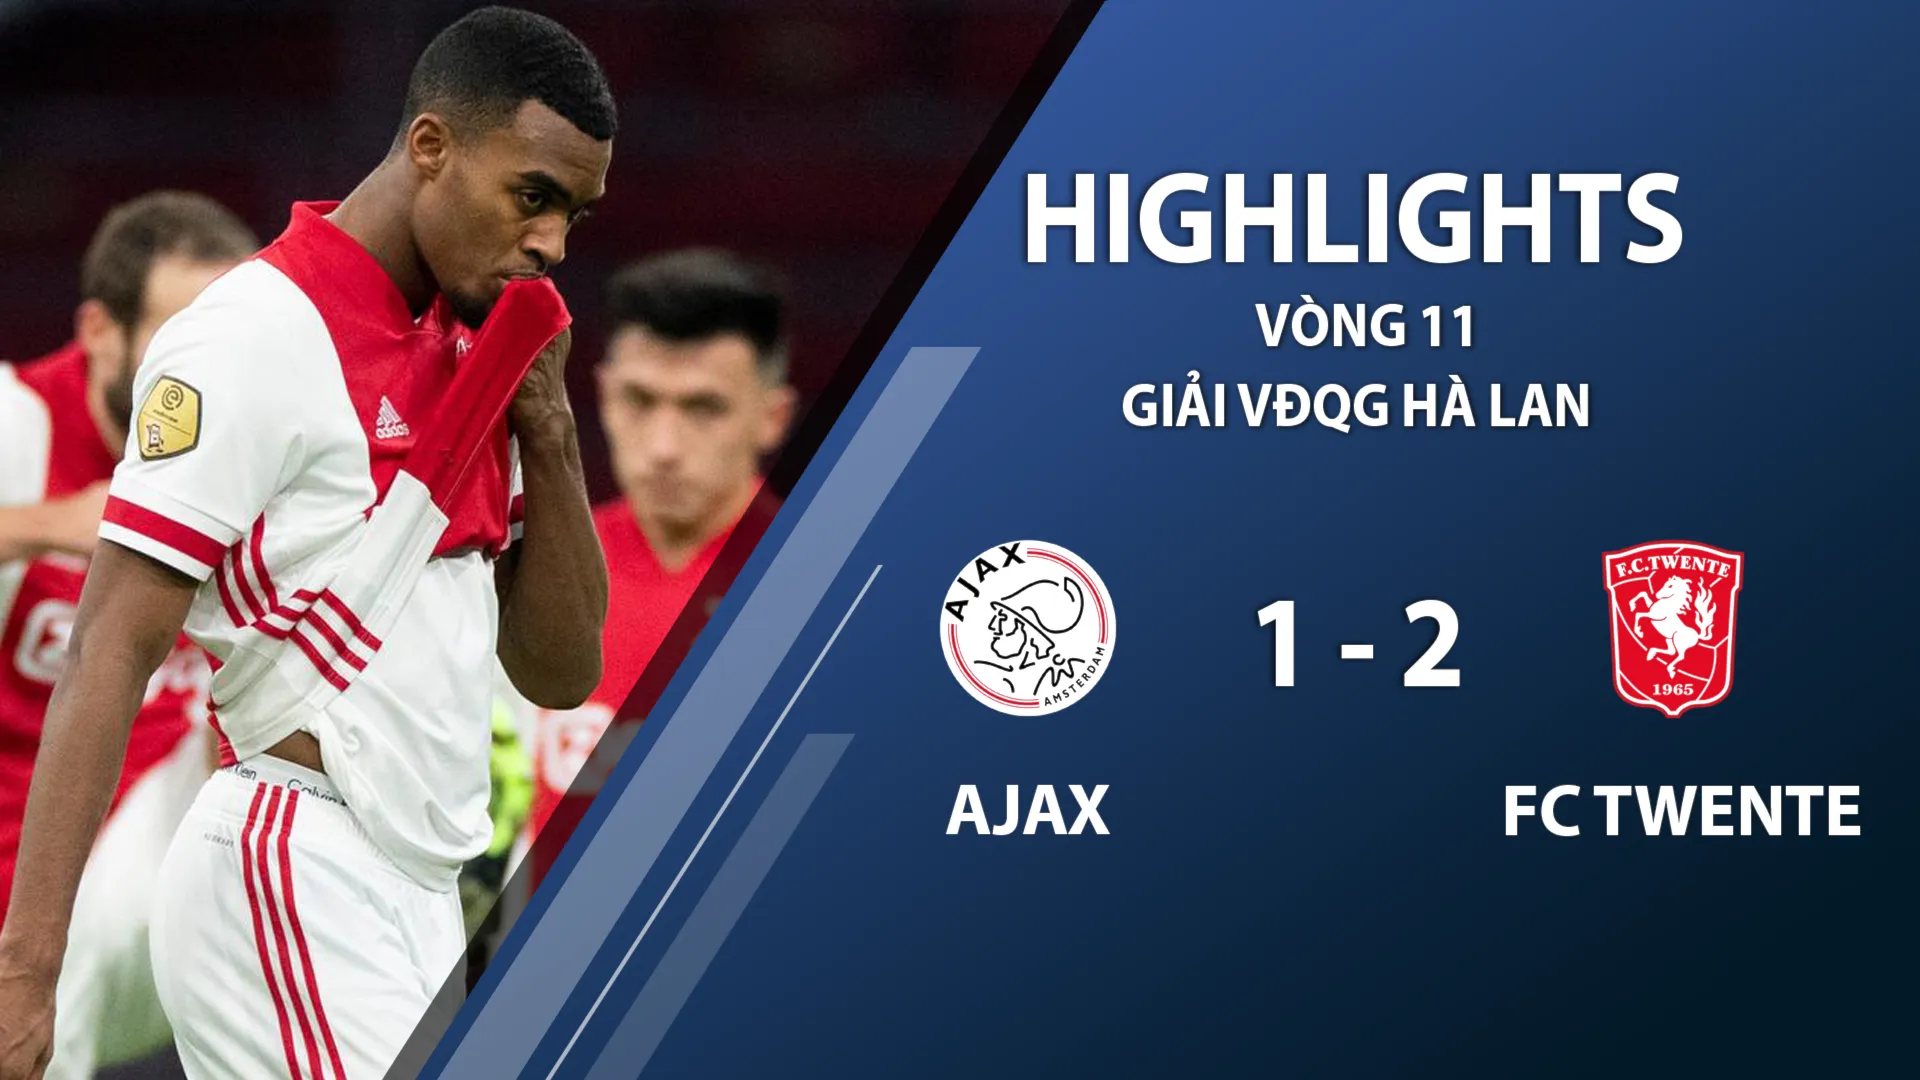 Highlights Ajax 1-2 FC Twente (vòng 11 giải VĐQG Hà Lan 2020/21)